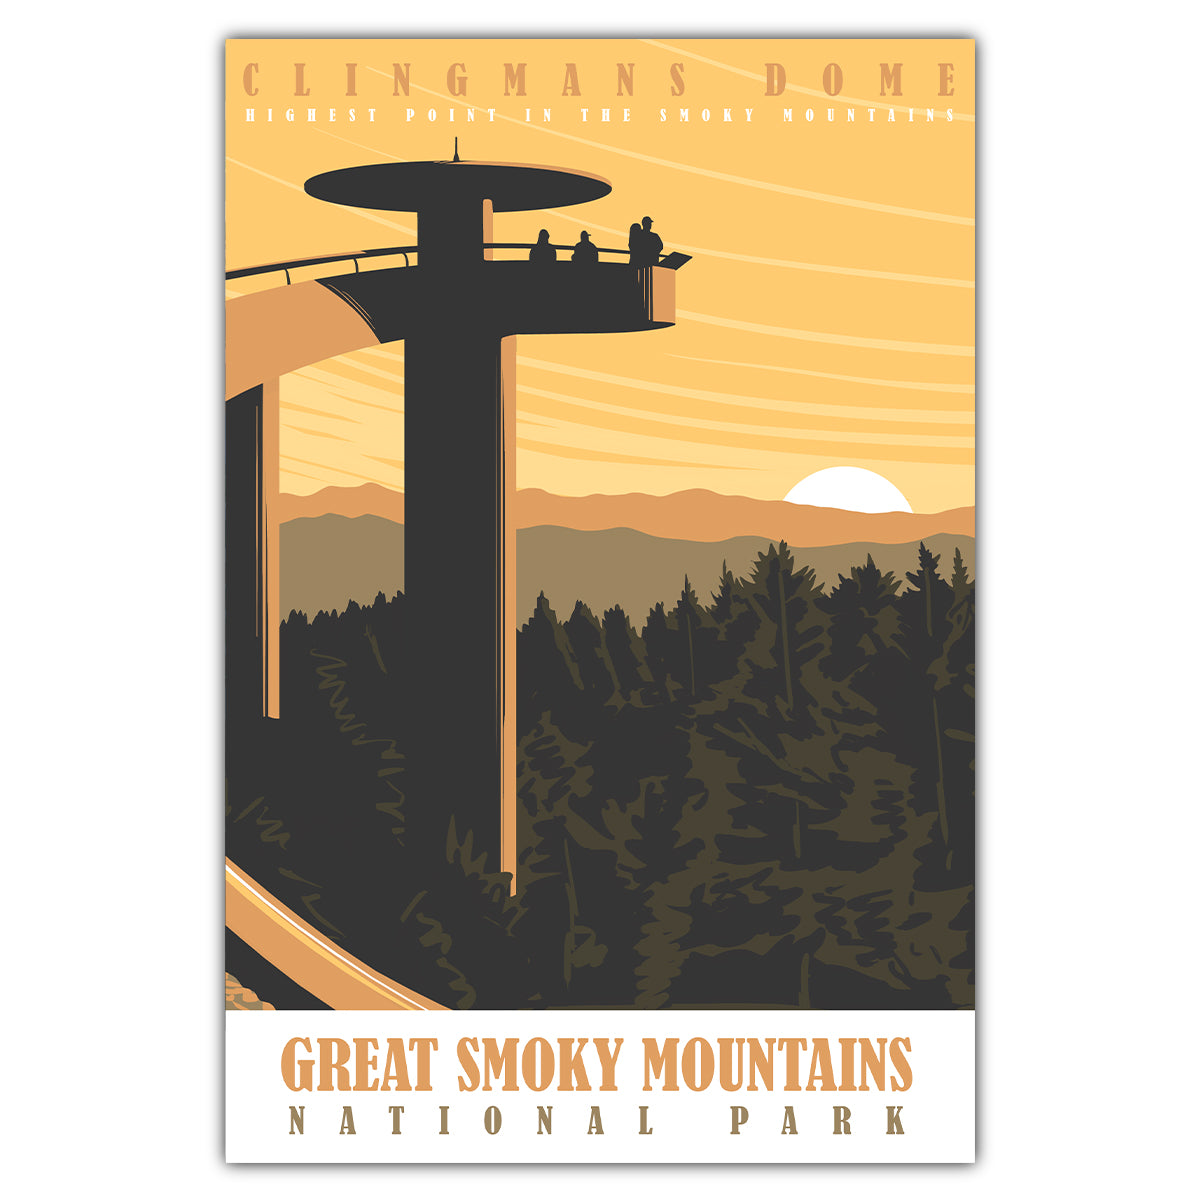 Great Smoky Mountains Clingmans Dome Postcard - Bozz Prints